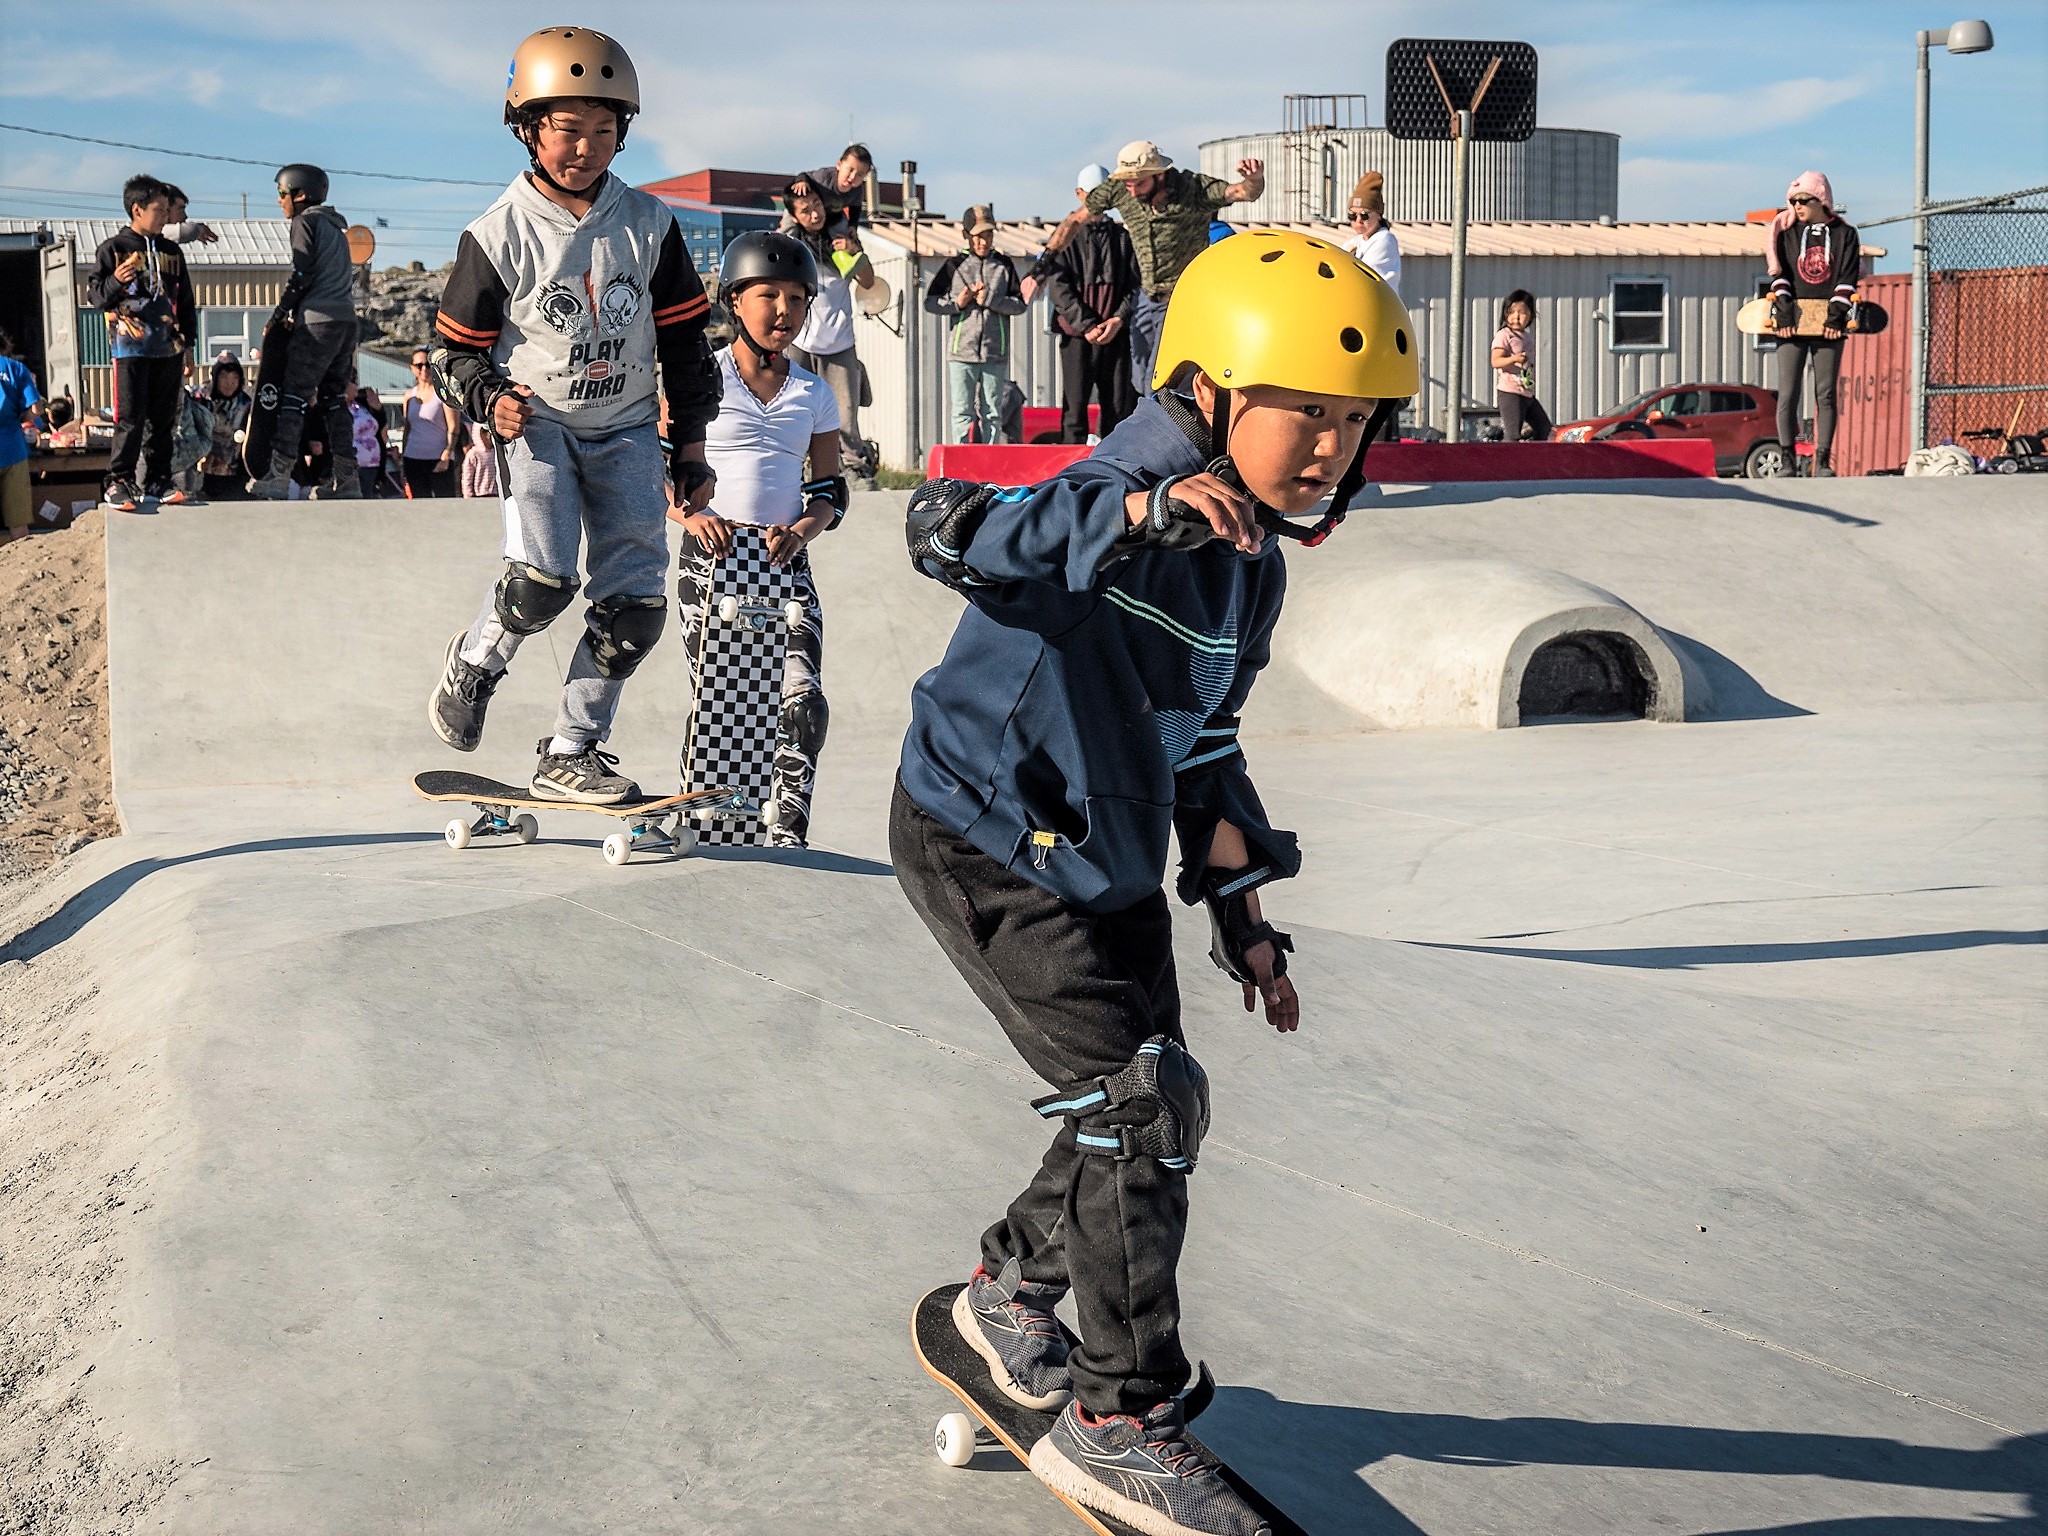 The new Inukjuak skatepark built by Make Life Skate Life is officially open